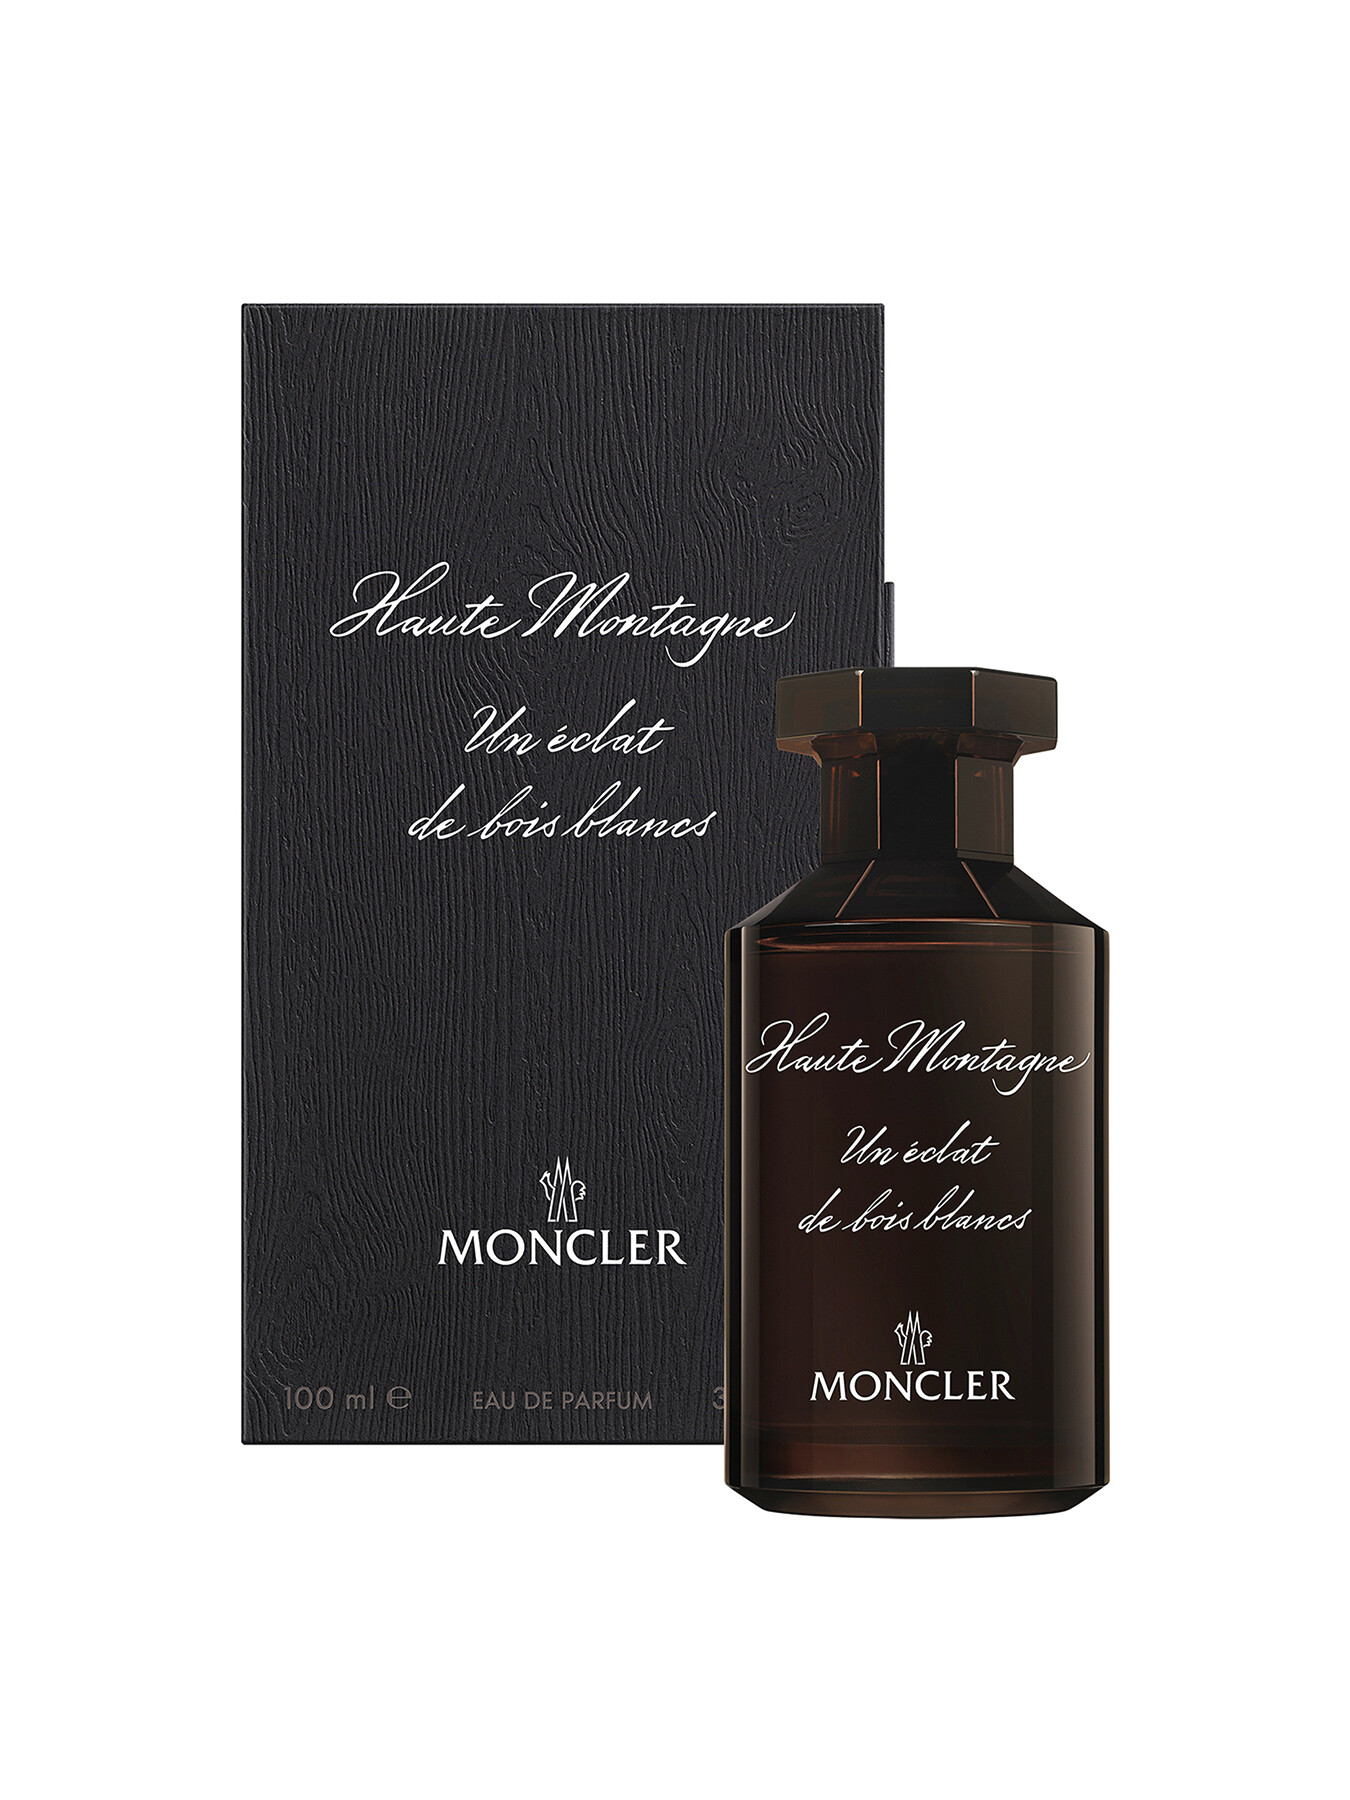 MONCLER Moncler Les Sommets Haute Montagne Eau de Parfum 100ml | Fenwick